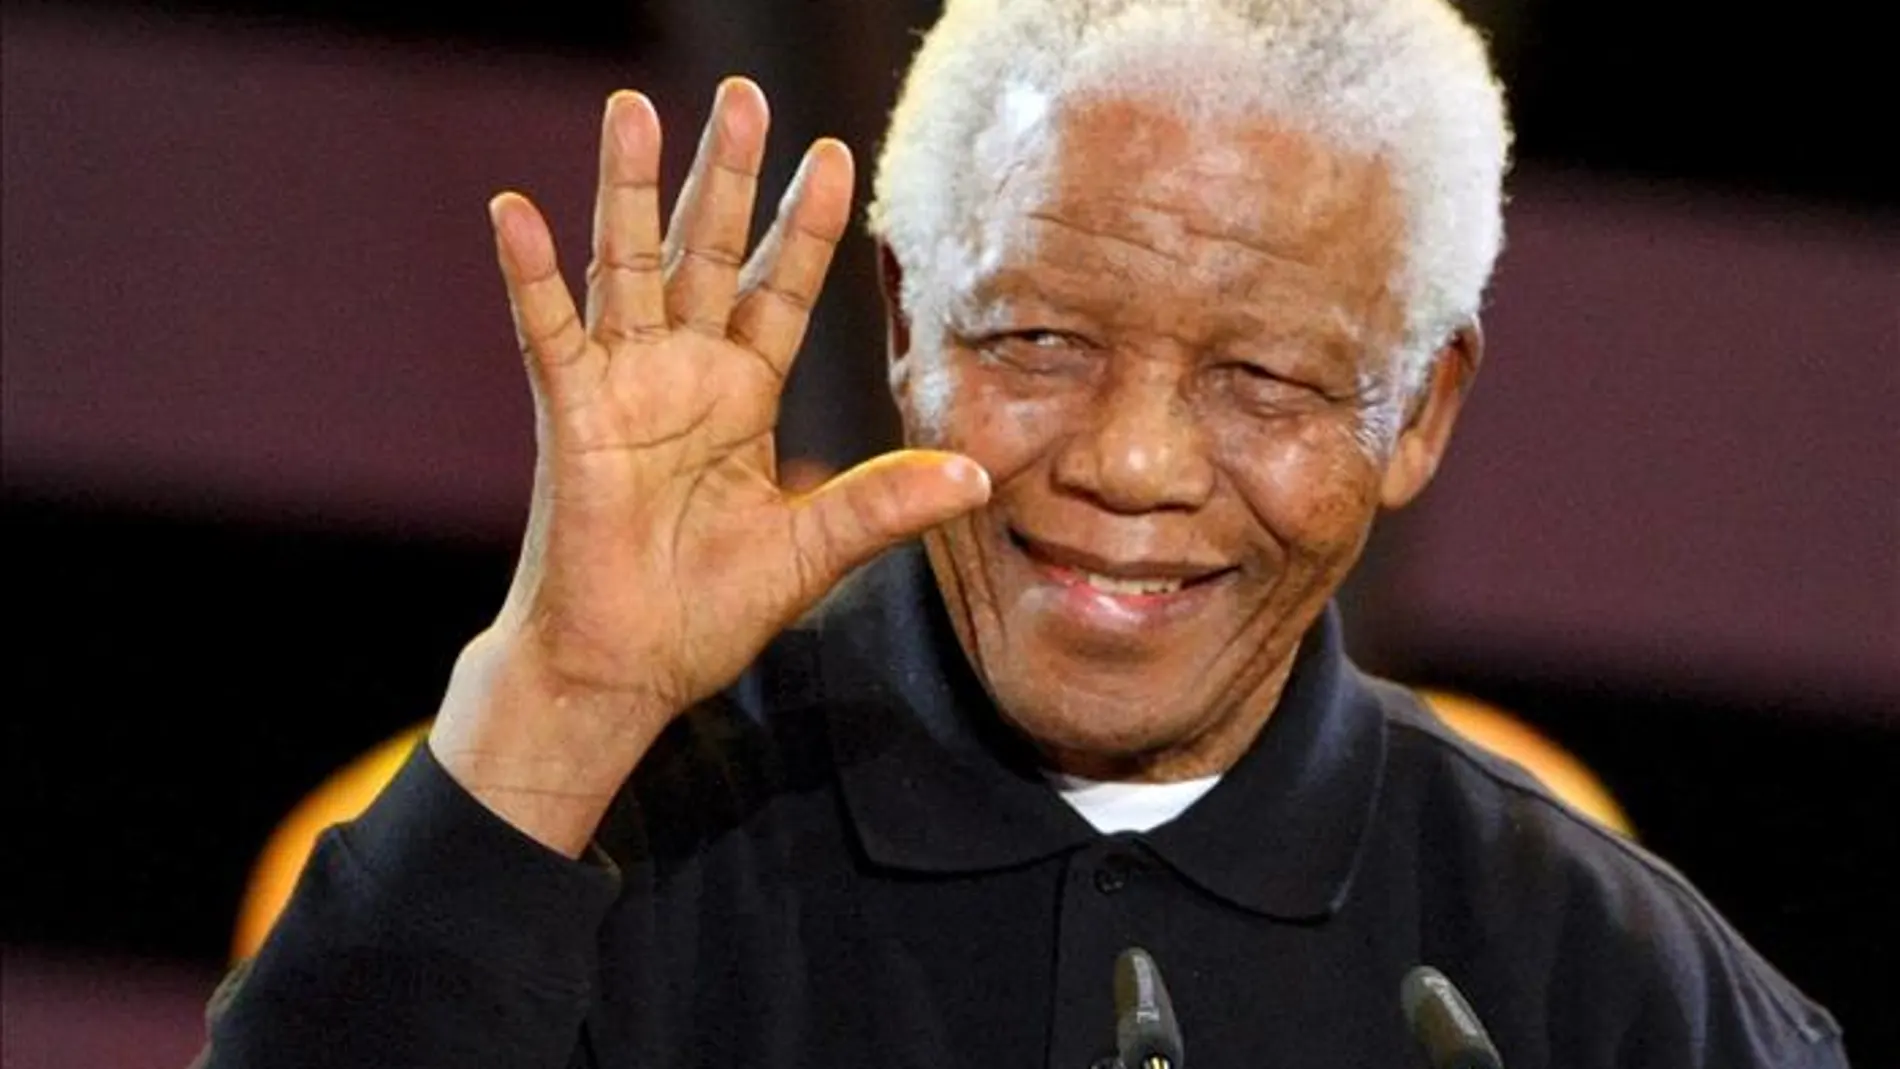 Mandela saluda durante el concierto "46664" que se celebró con motivo del Día Mundial contra el Sida